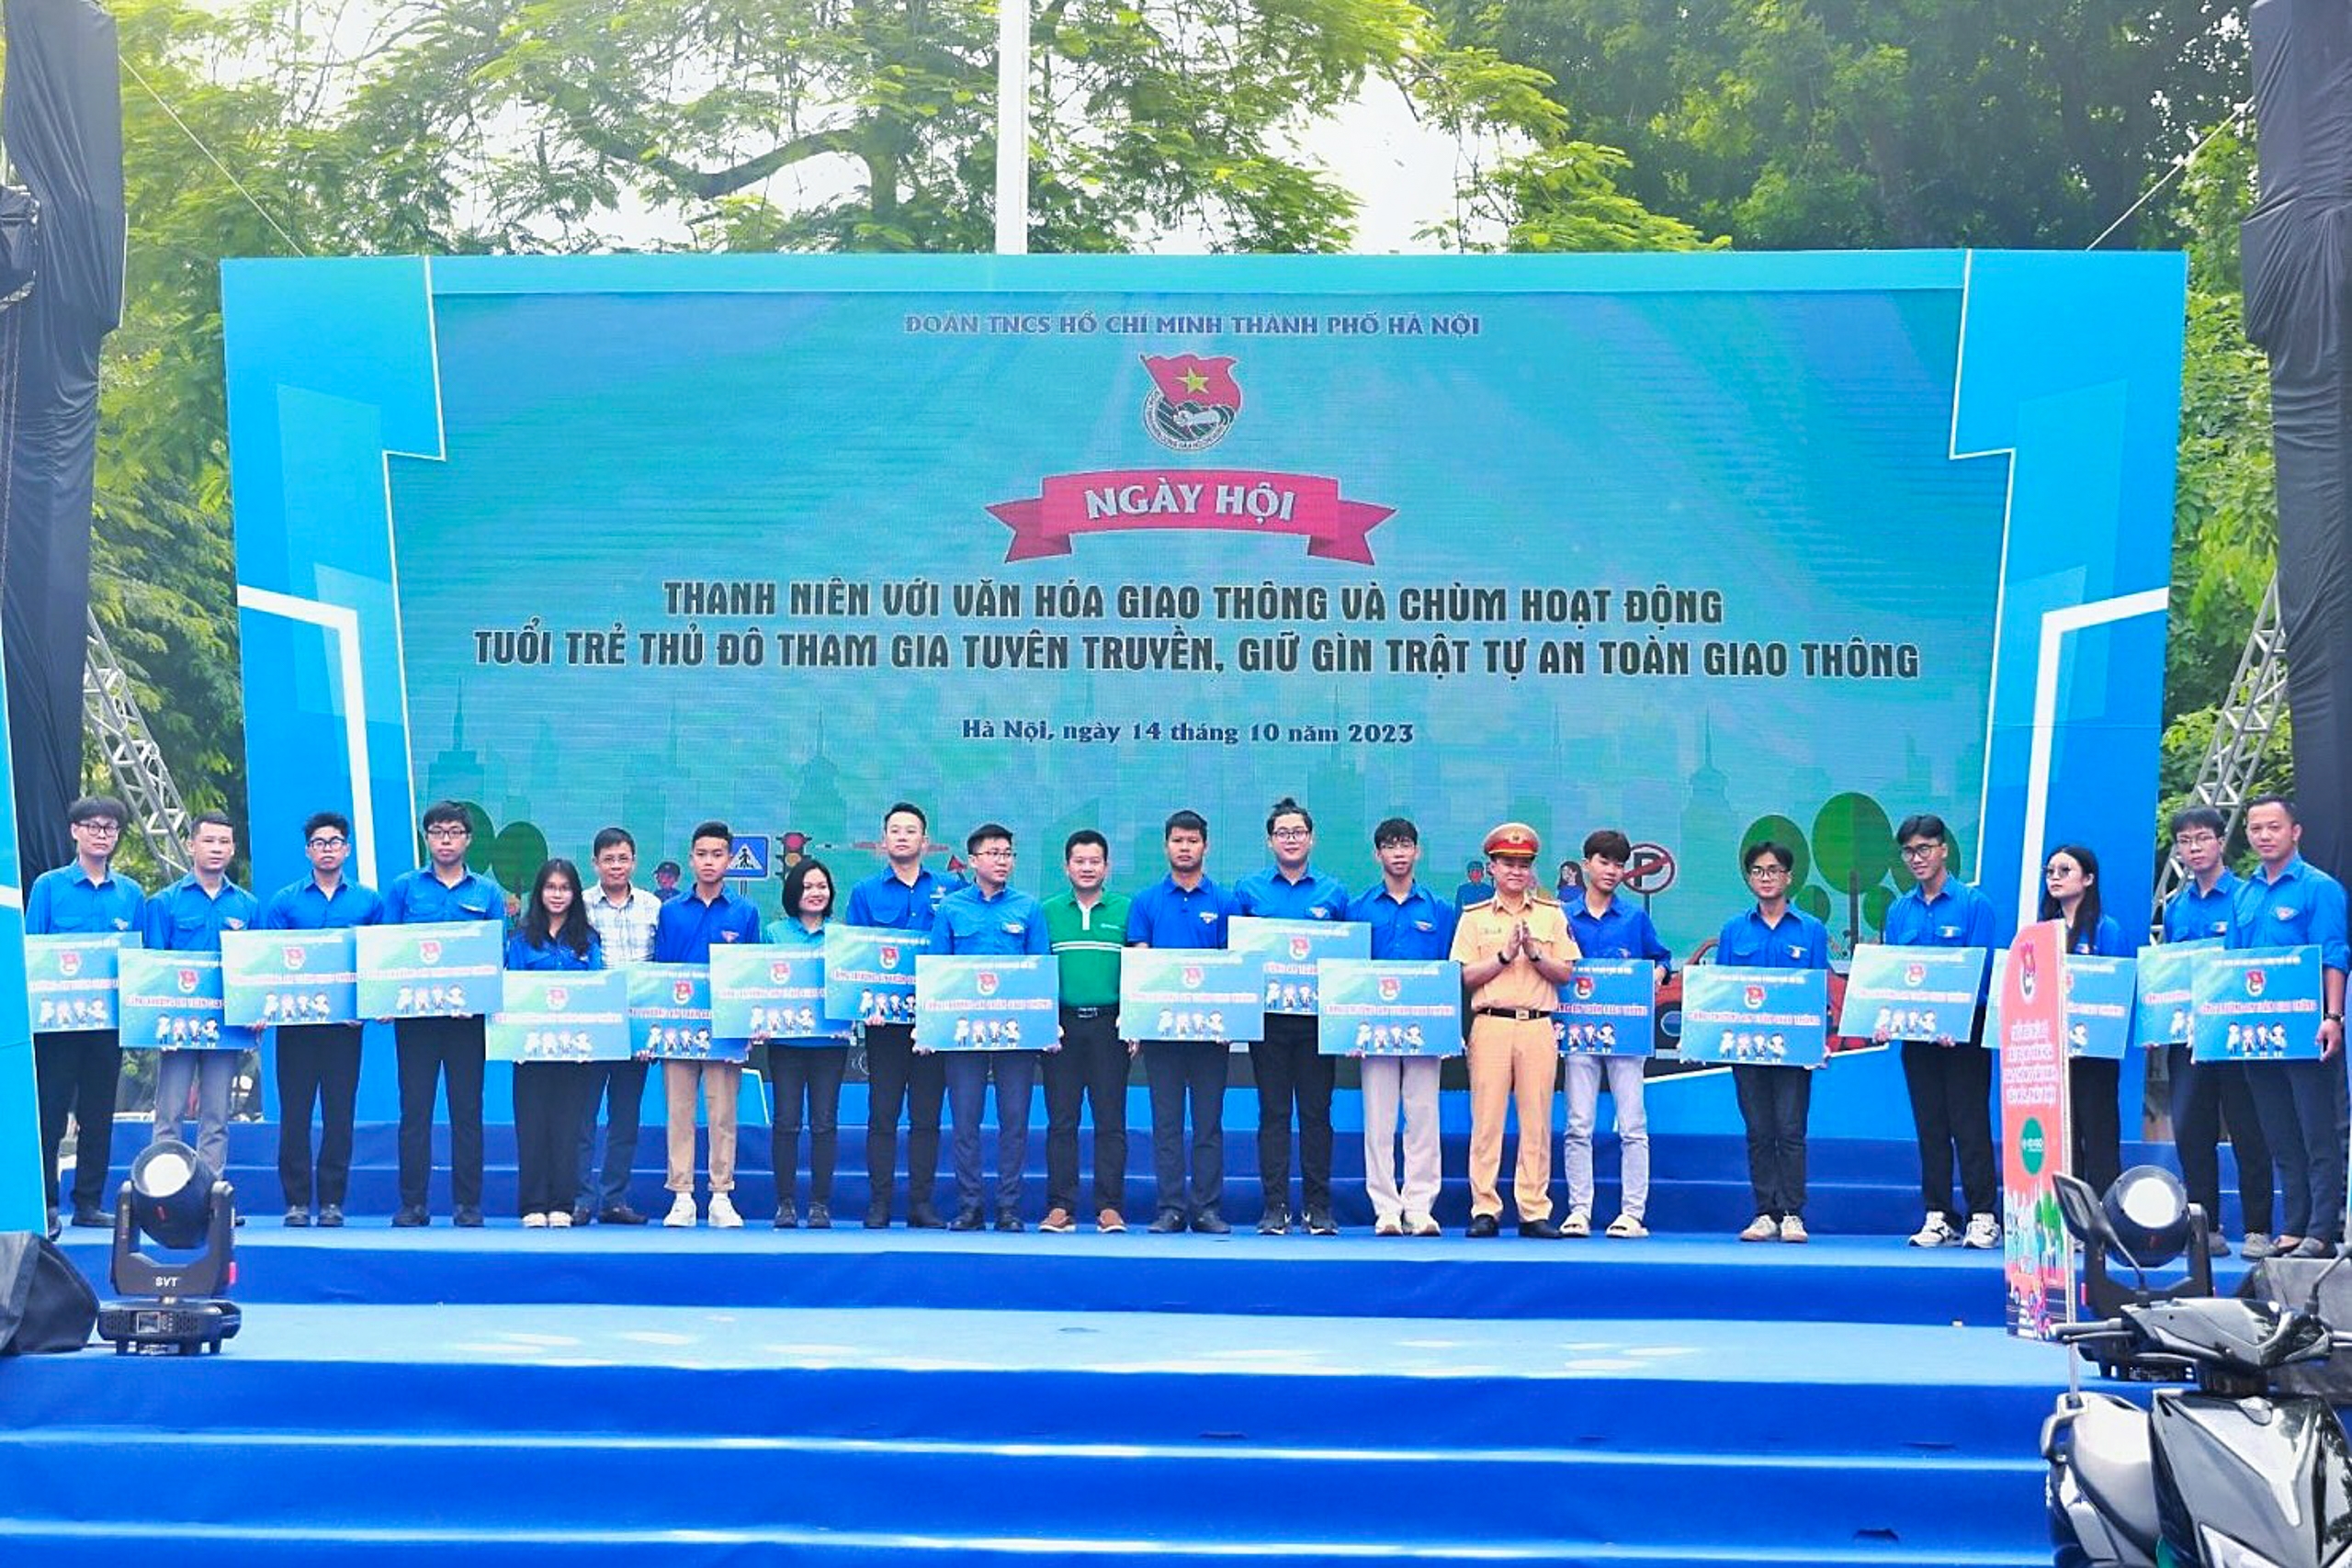 Ngày hội Thanh thiếu niên Hà Nội tham gia gìn giữ an toàn giao thông